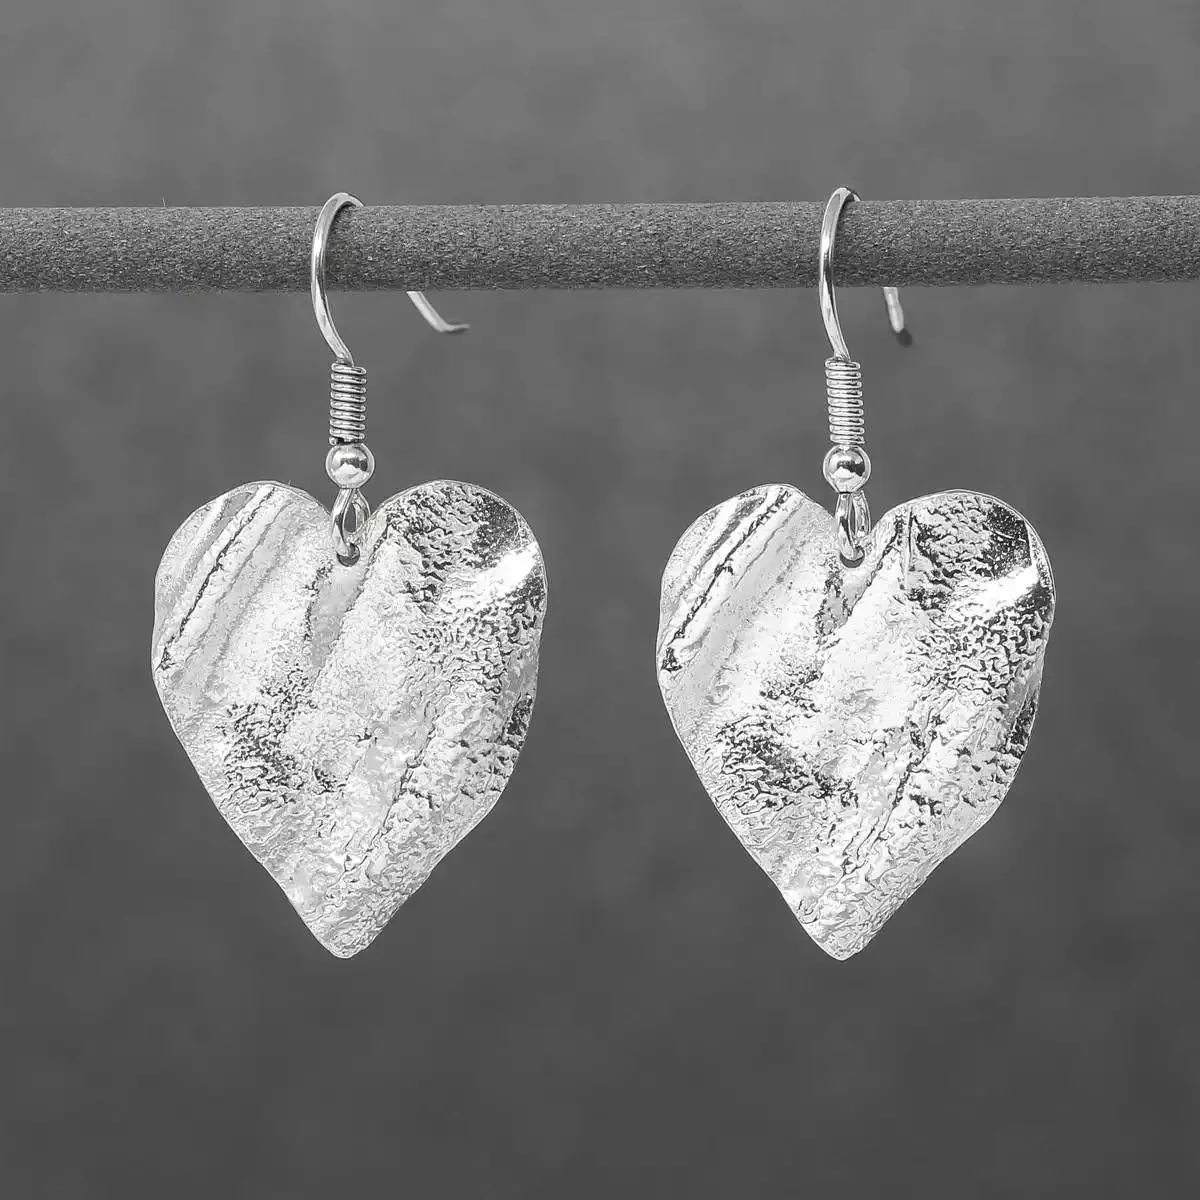 Ribbon Heart Silver Drop Earrings - Large by Silverfish